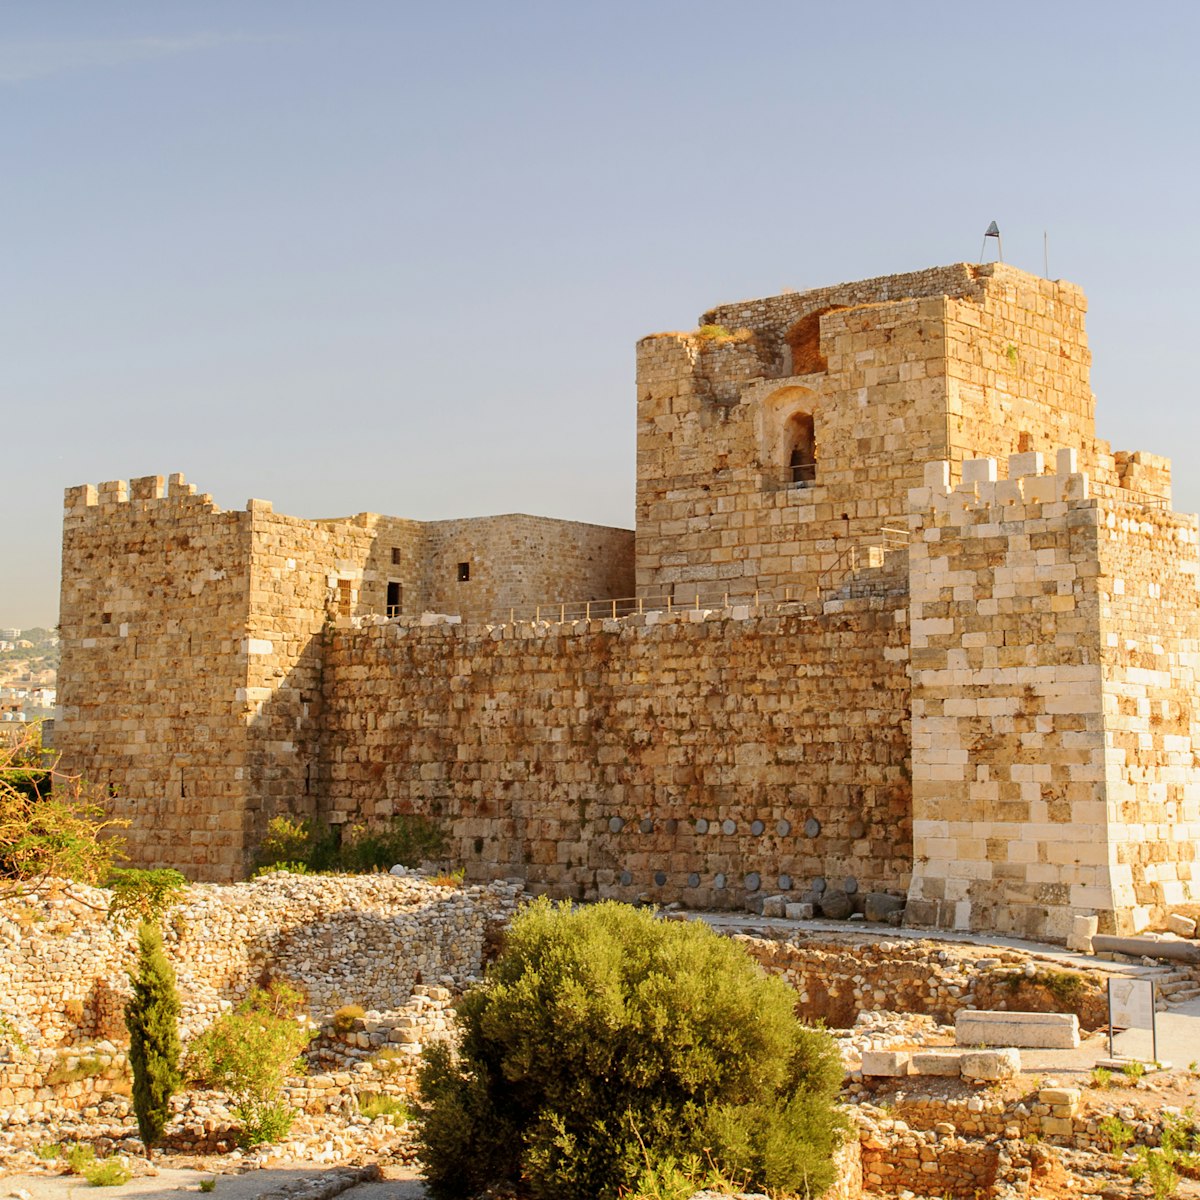 Byblos Crusader Castle, Lebanon.  